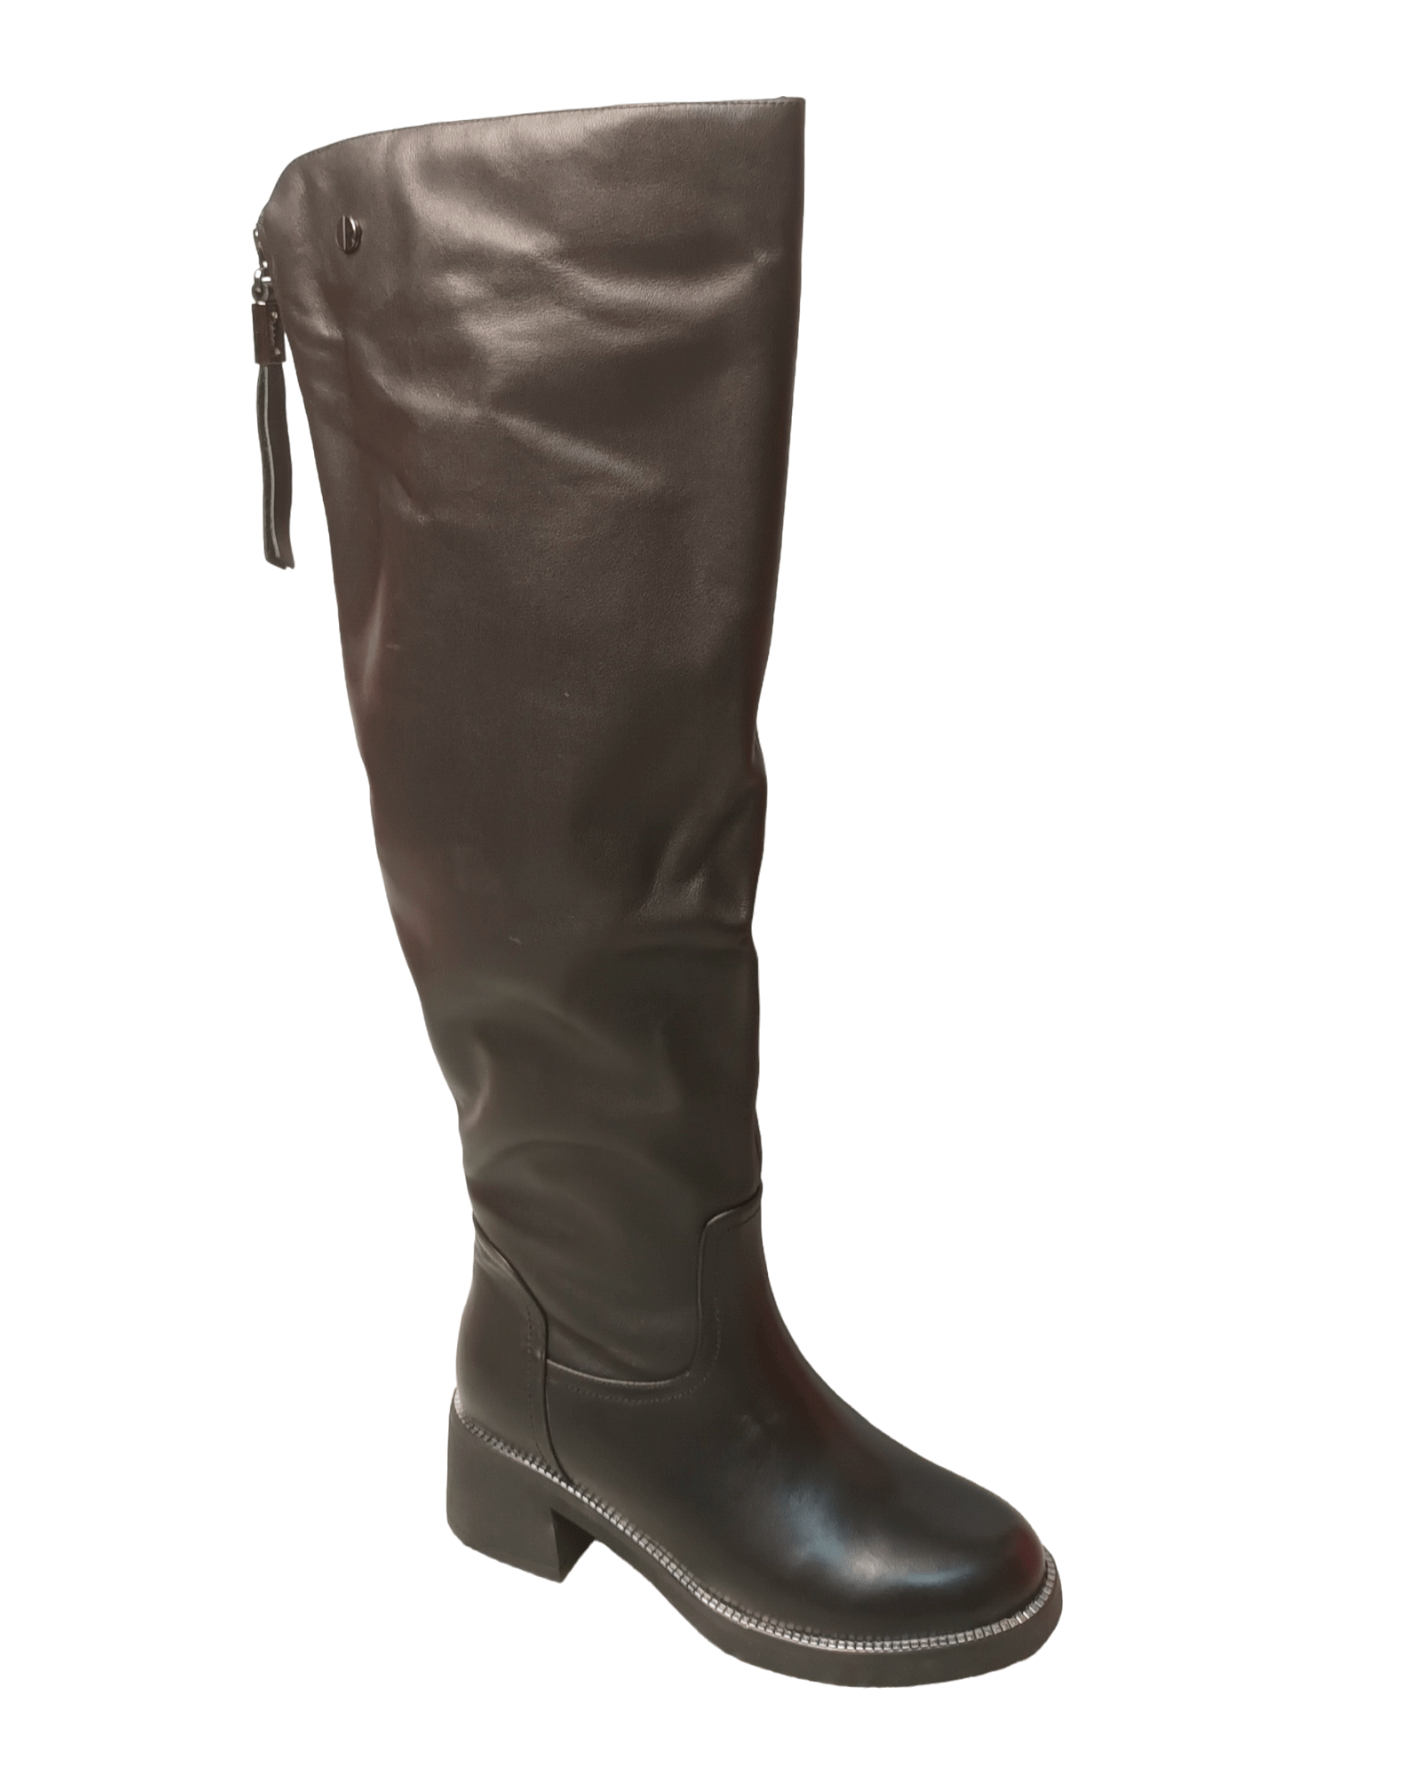 Сапоги женские зимние кожаные черные  FHR850-0113-N251BM